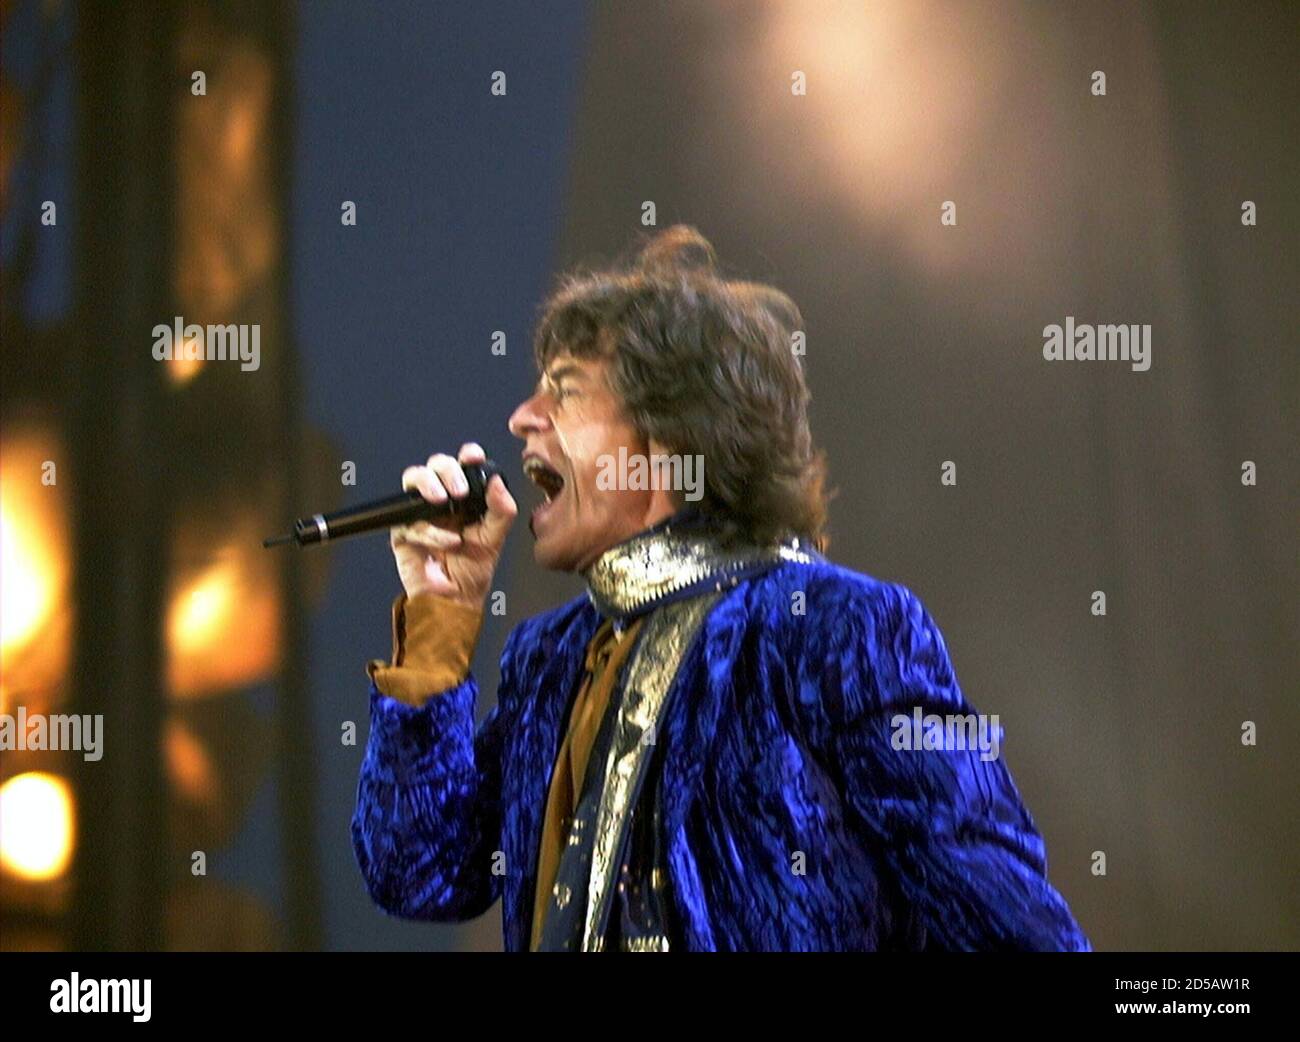 Mick Jagger von den Rolling Stones tritt am 9. Juli beim Open Air Festival  'Out in the Green' in Frauenfeld auf. Mehr als 60,000 Fans besuchten die  einzige Aufführung der Stones-Show 'Bridges